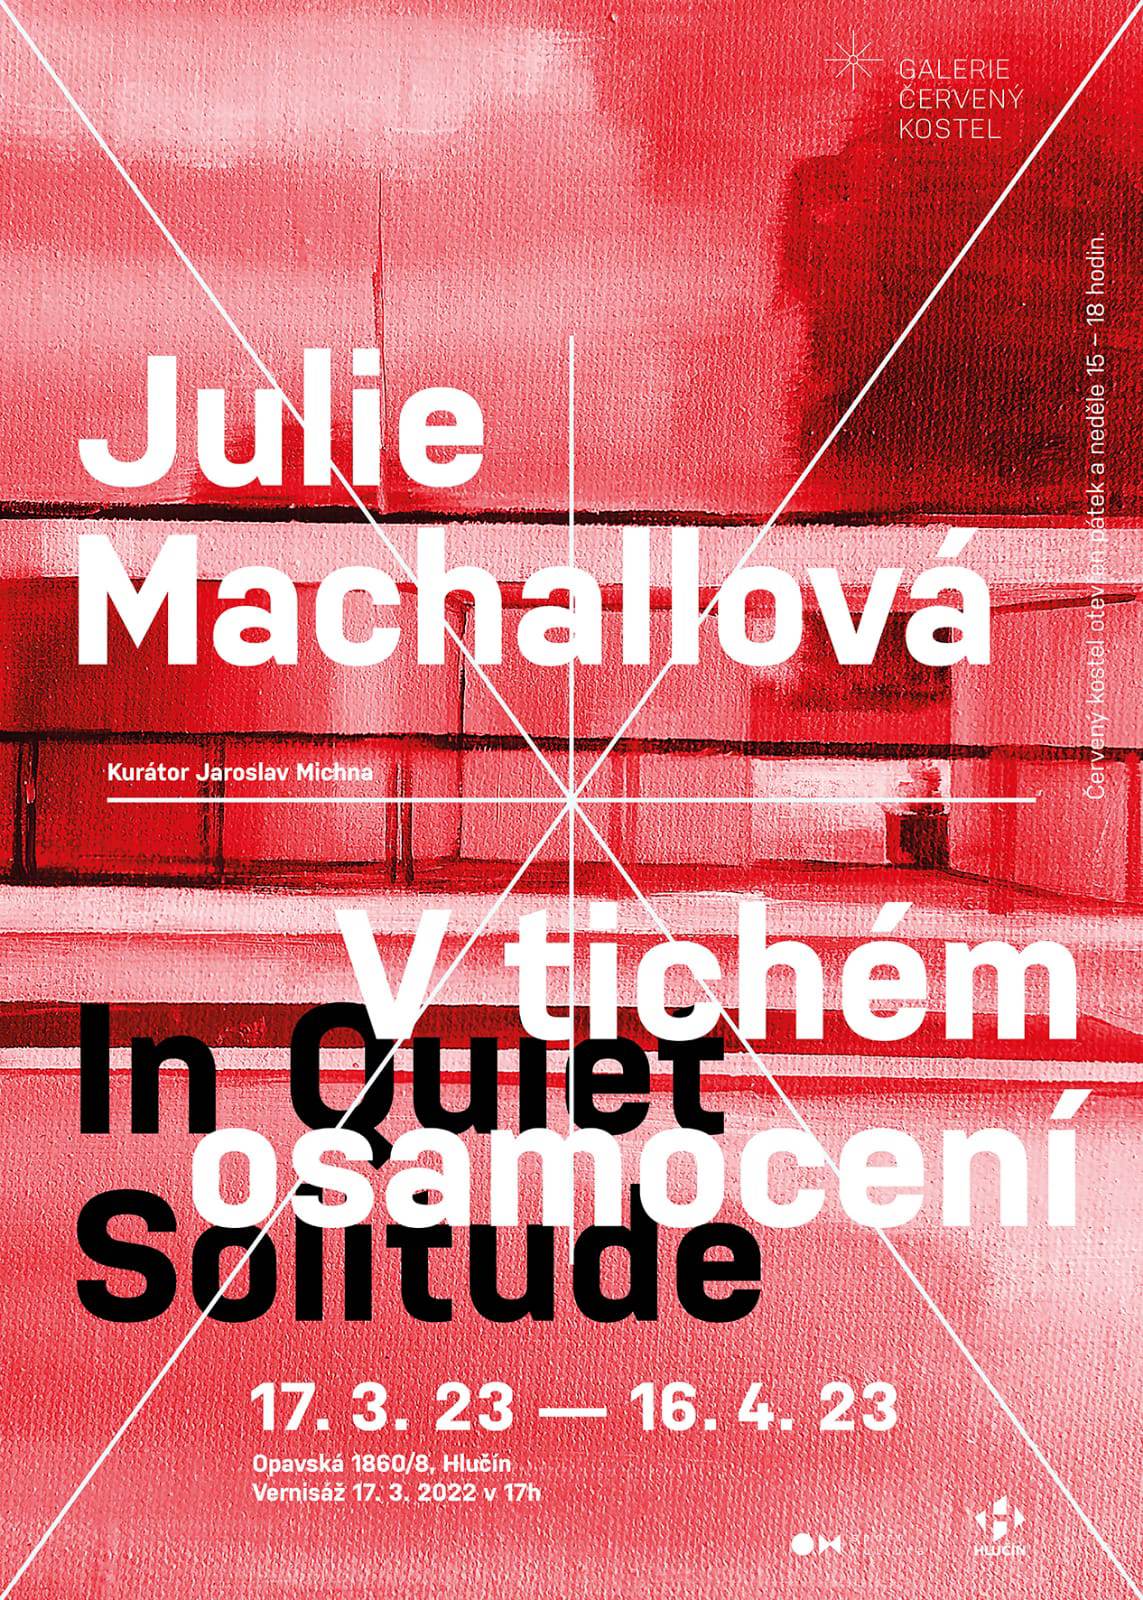 Julie Machallová - malby